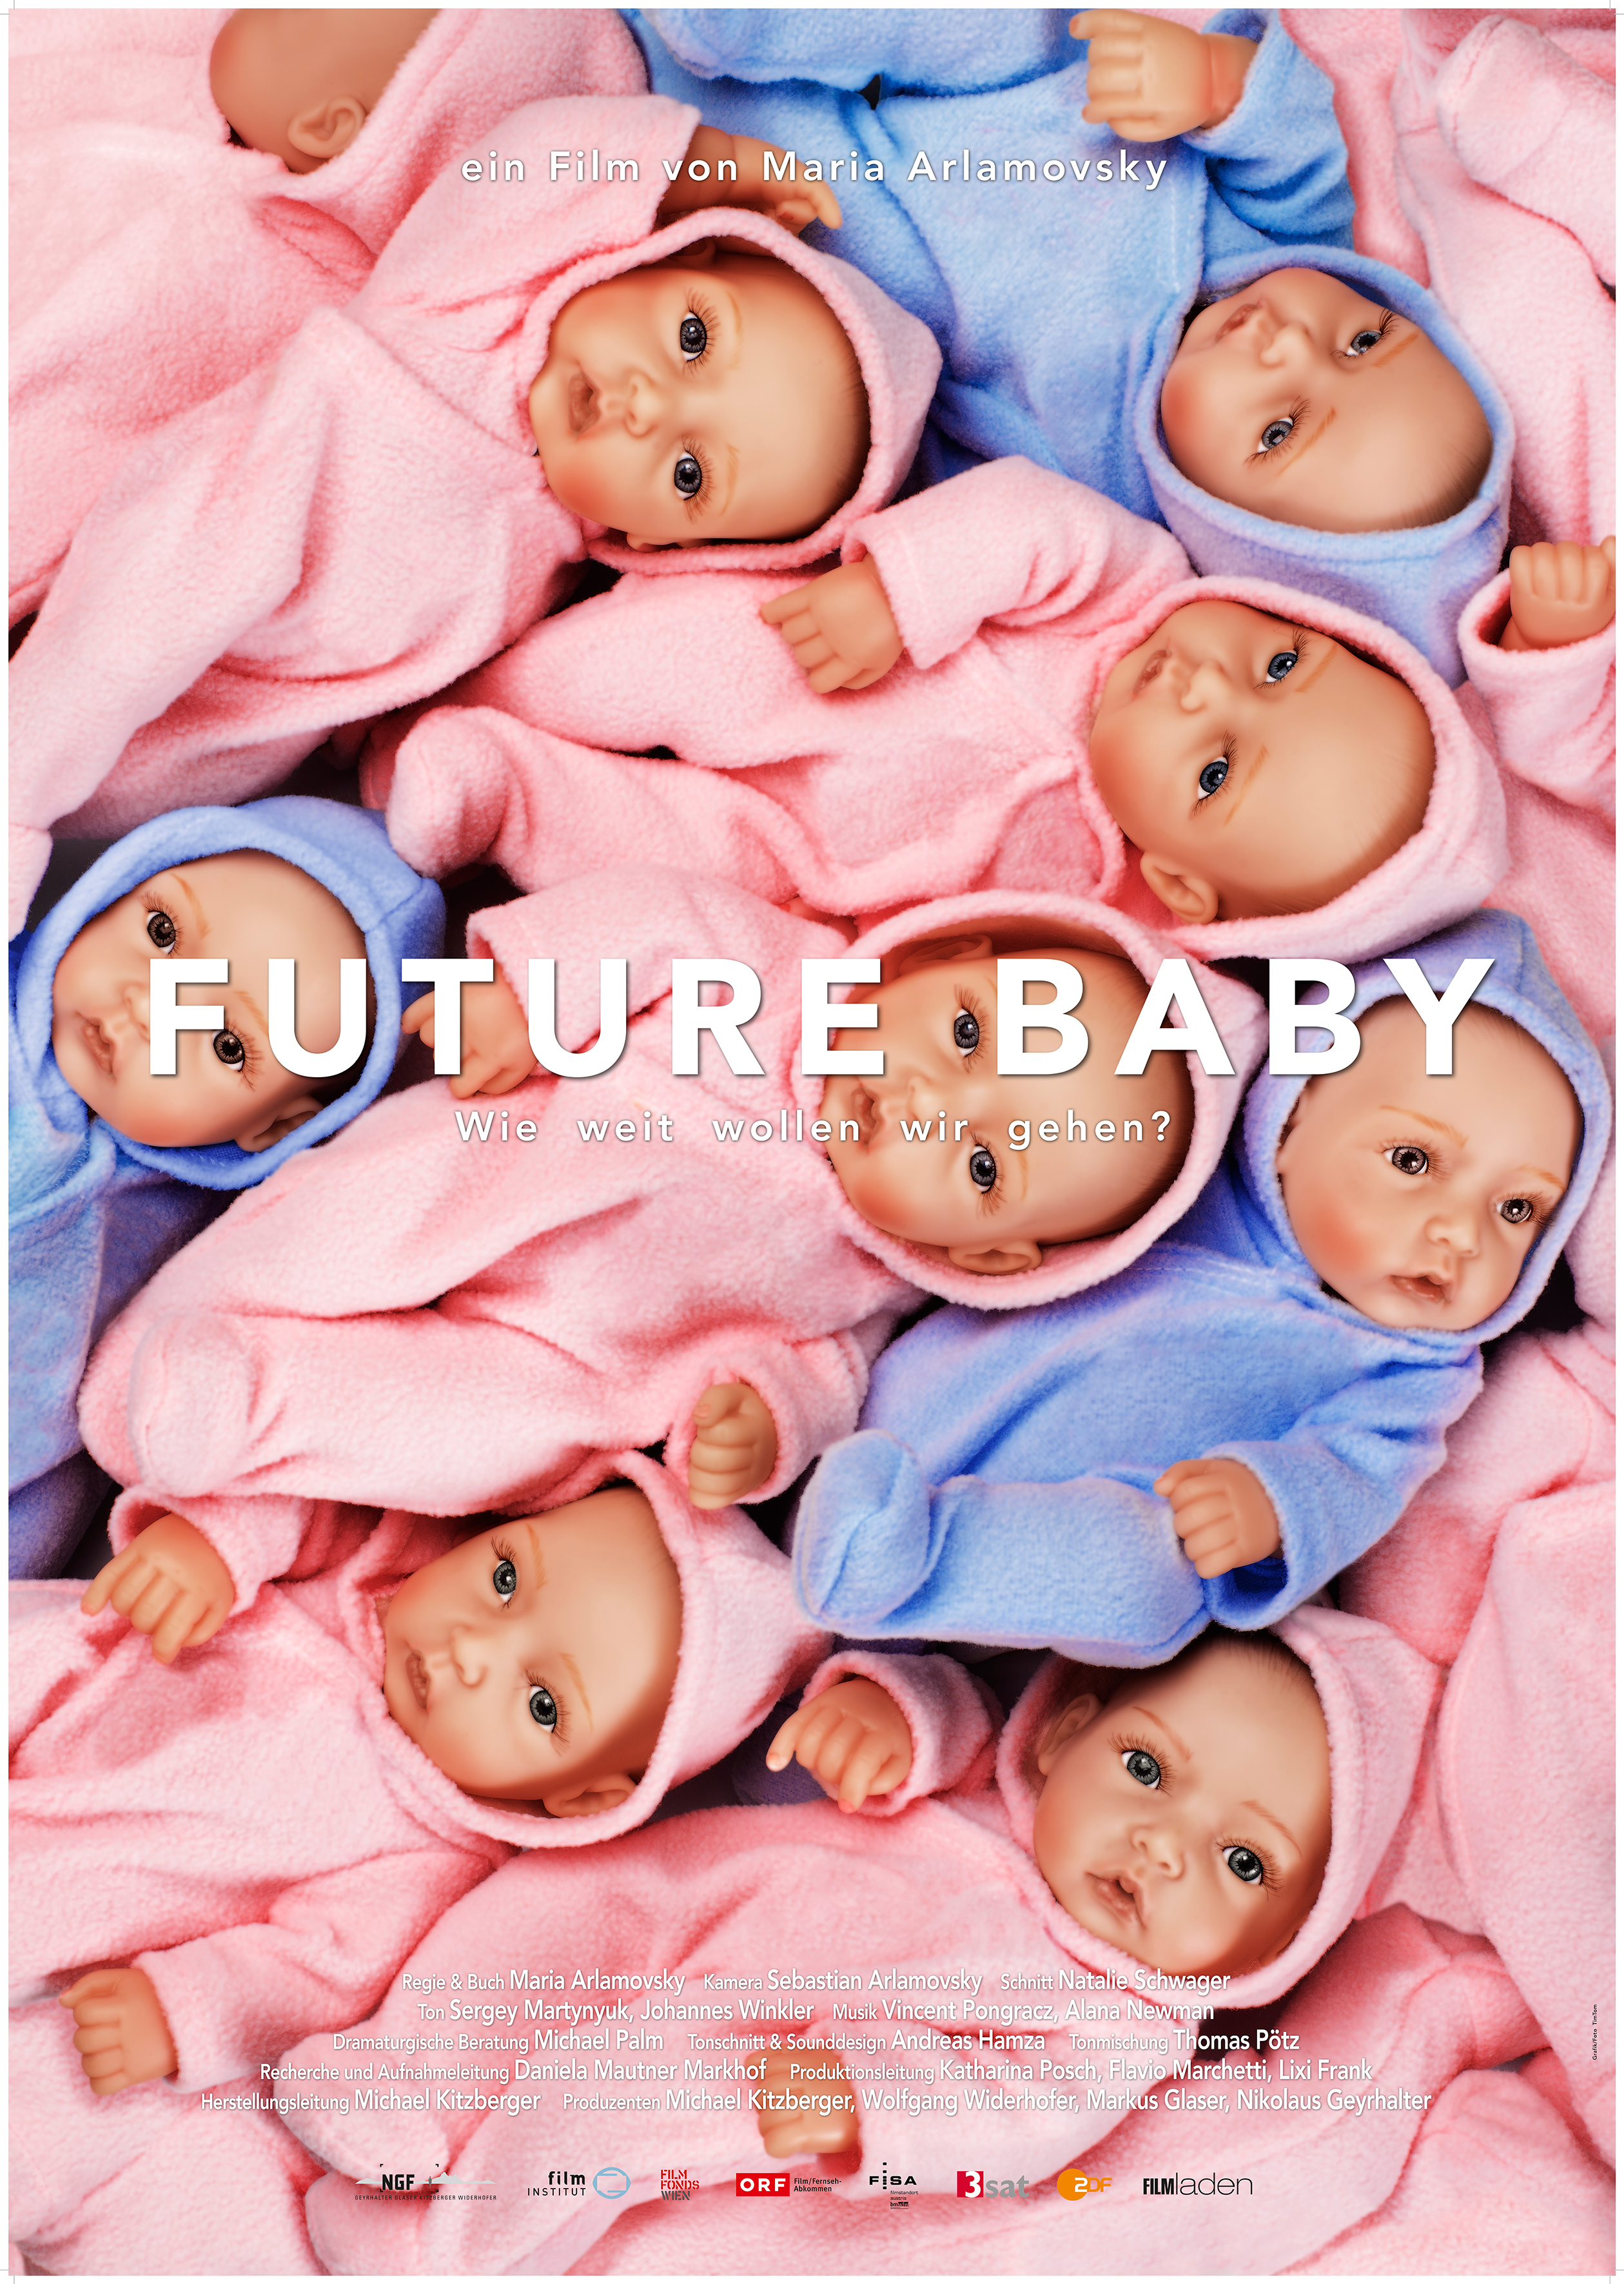 fl_future-baby_posterubanner.indd